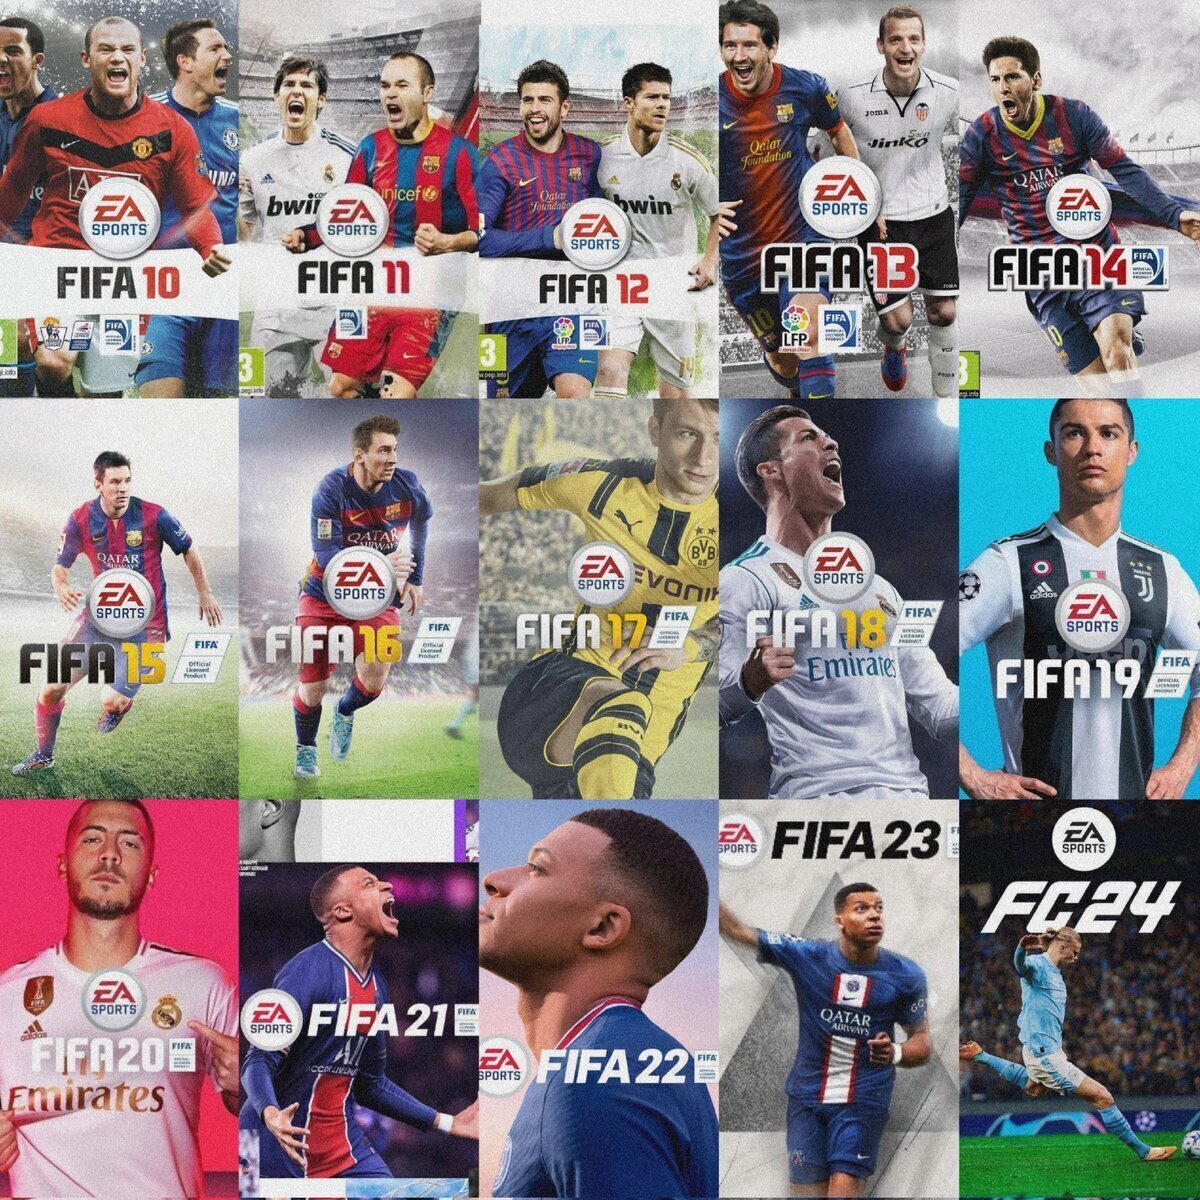 Para ti... ¿cuál es el mejor FIFA? Pregunta de examen